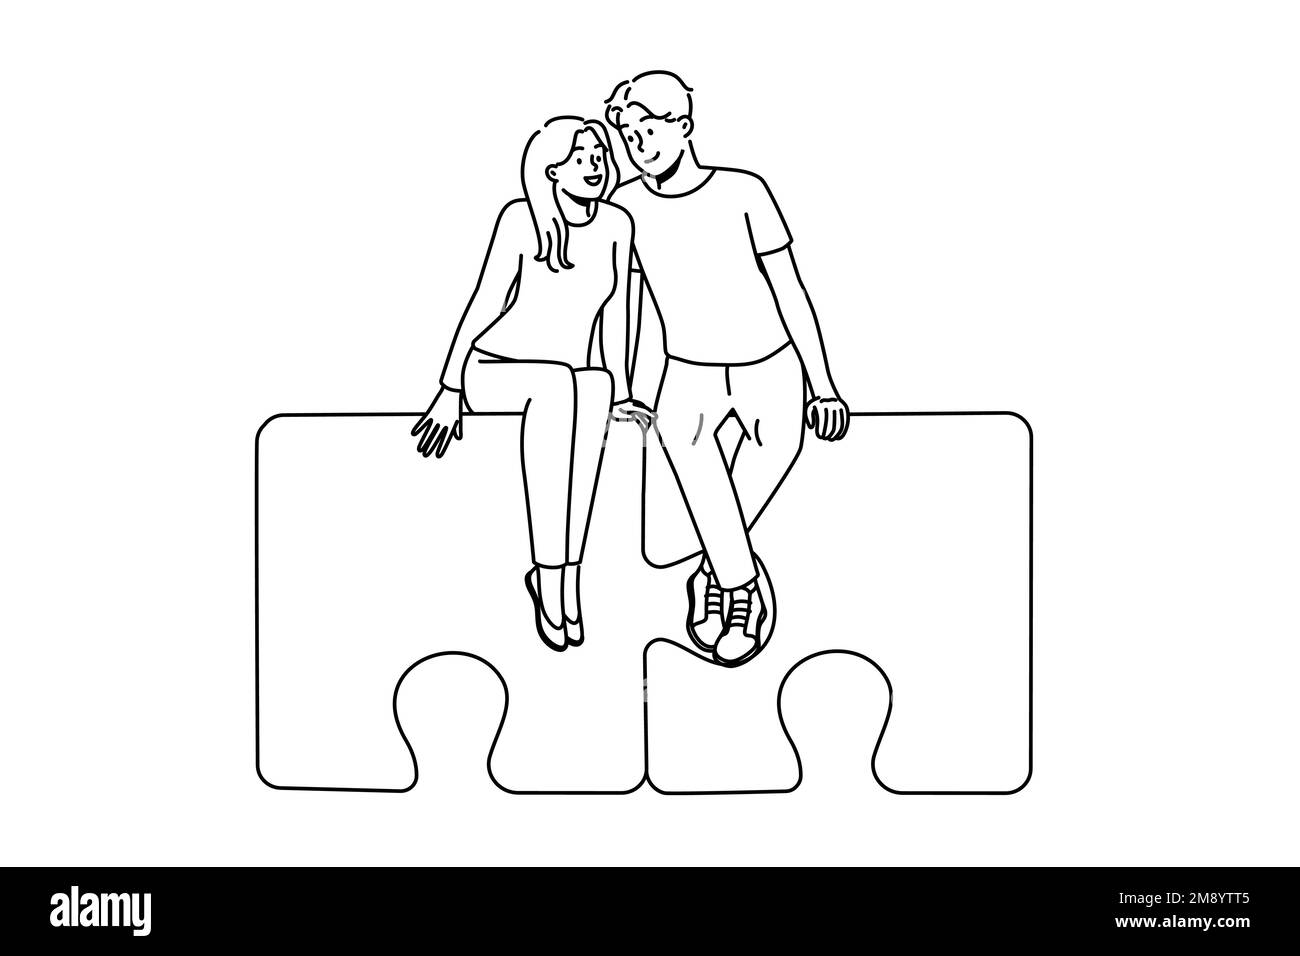 Glückliches Paar sitzt auf Puzzles umarmt. Lächelnder Mann und Frau umarmen sich und finden zusammen Liebe. Beziehung und Zuneigung. Vektorgrafik. Stock Vektor